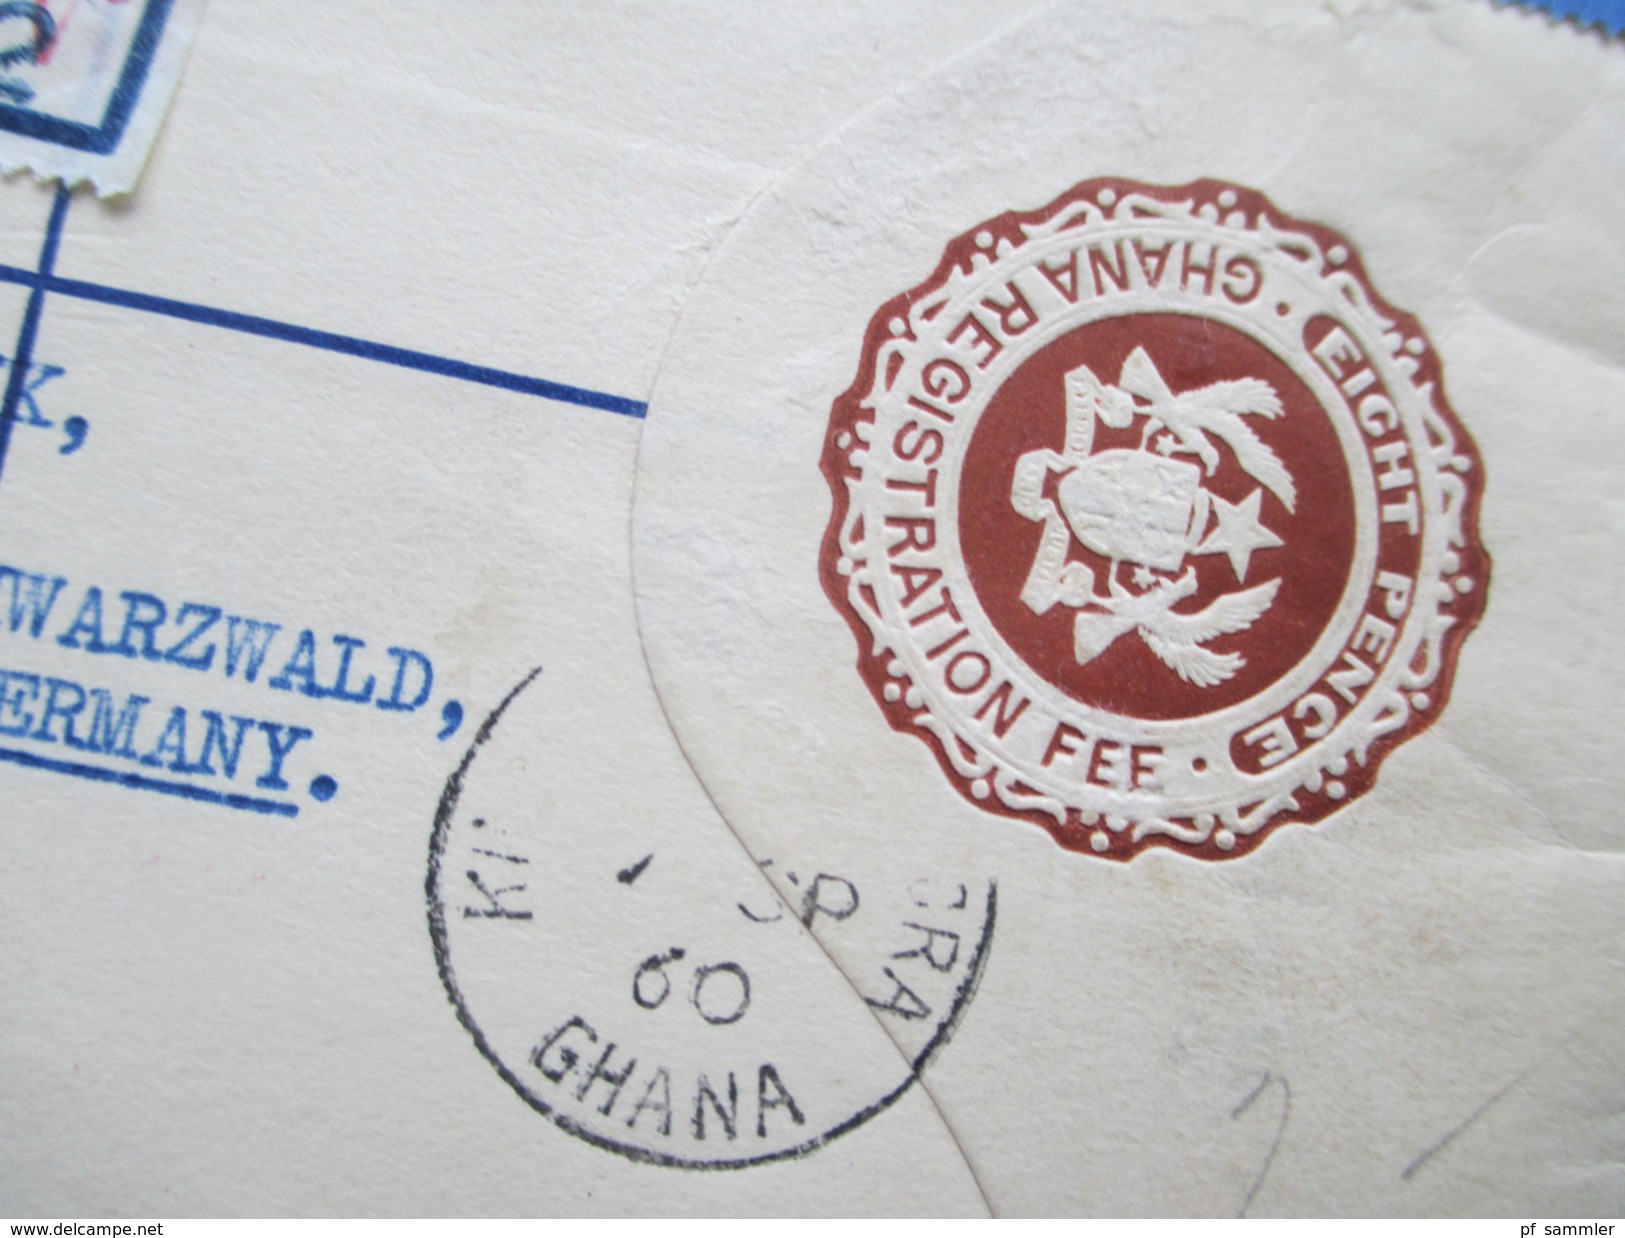 Ghana 1960 Airmail / Registered Letter / Ganzsache. R Zettel Mit Handschriftlichem Vermerk. Accra No 5532. Ganzsache - Ghana (1957-...)